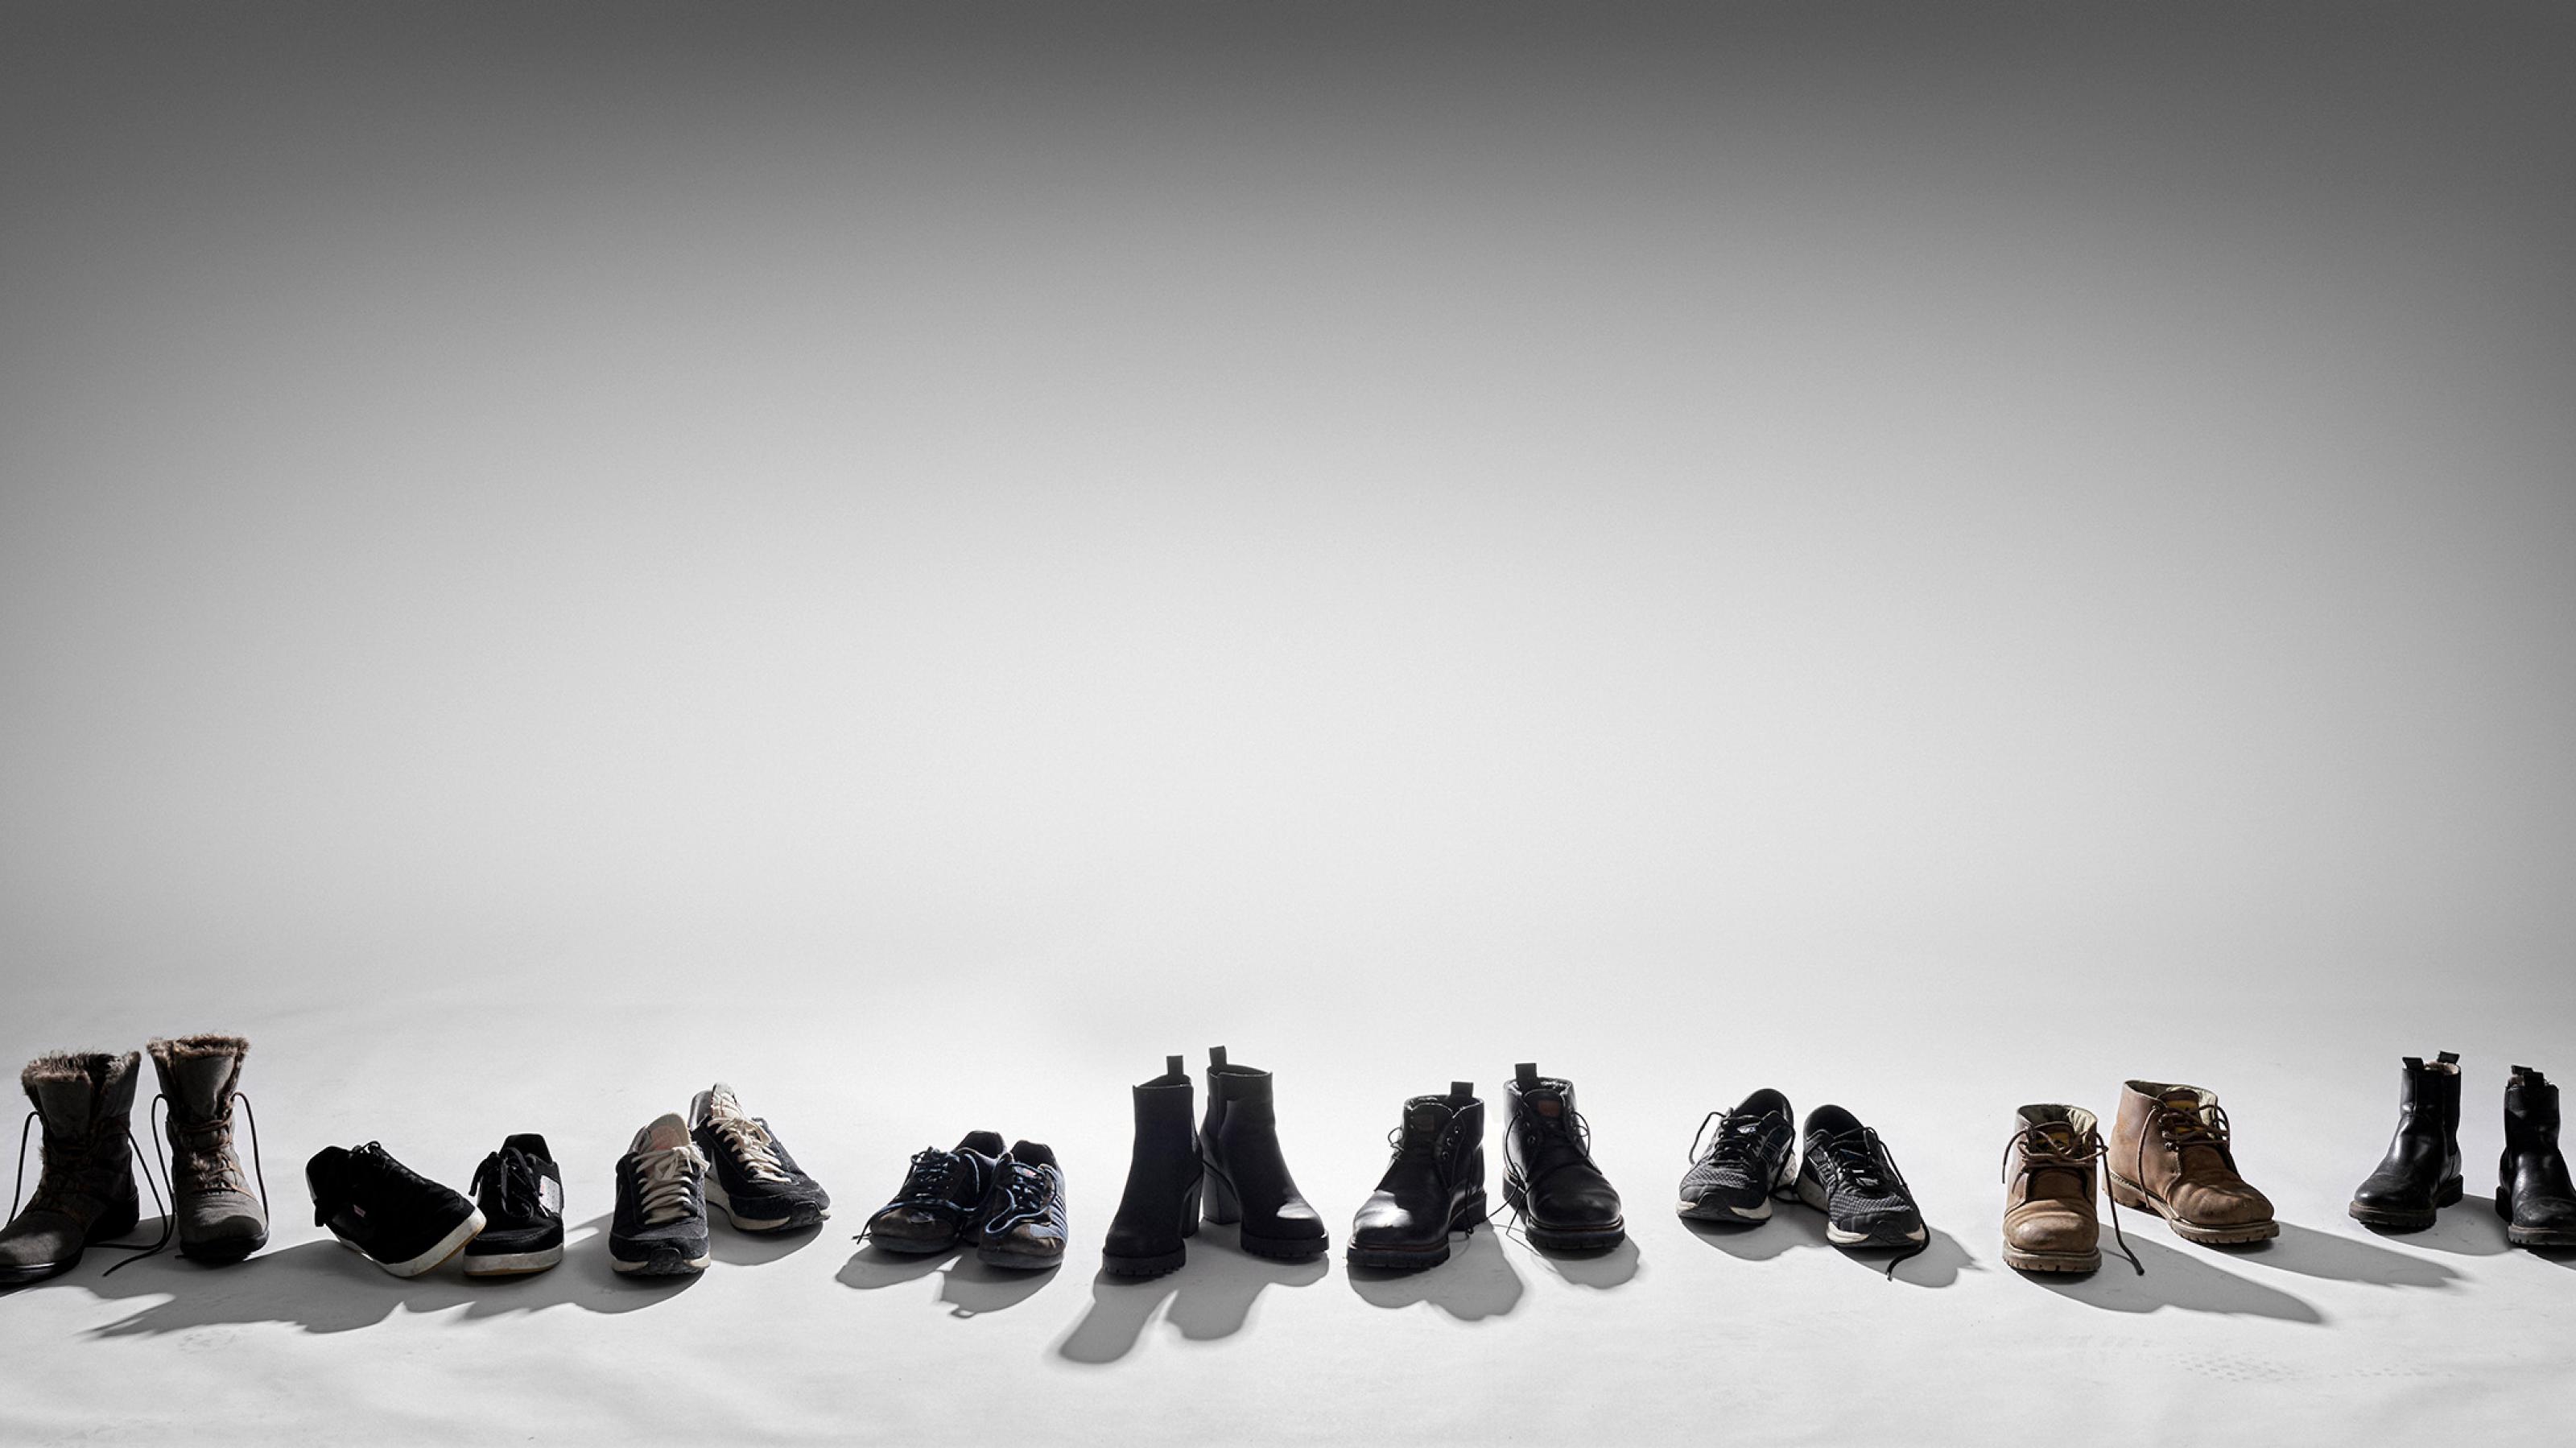 Schwarz-Weiß-Fotografie, die eine Reihe leerer Schuhpaare zeigt, mit der Spitze zum Betrachtenden gerichtet.